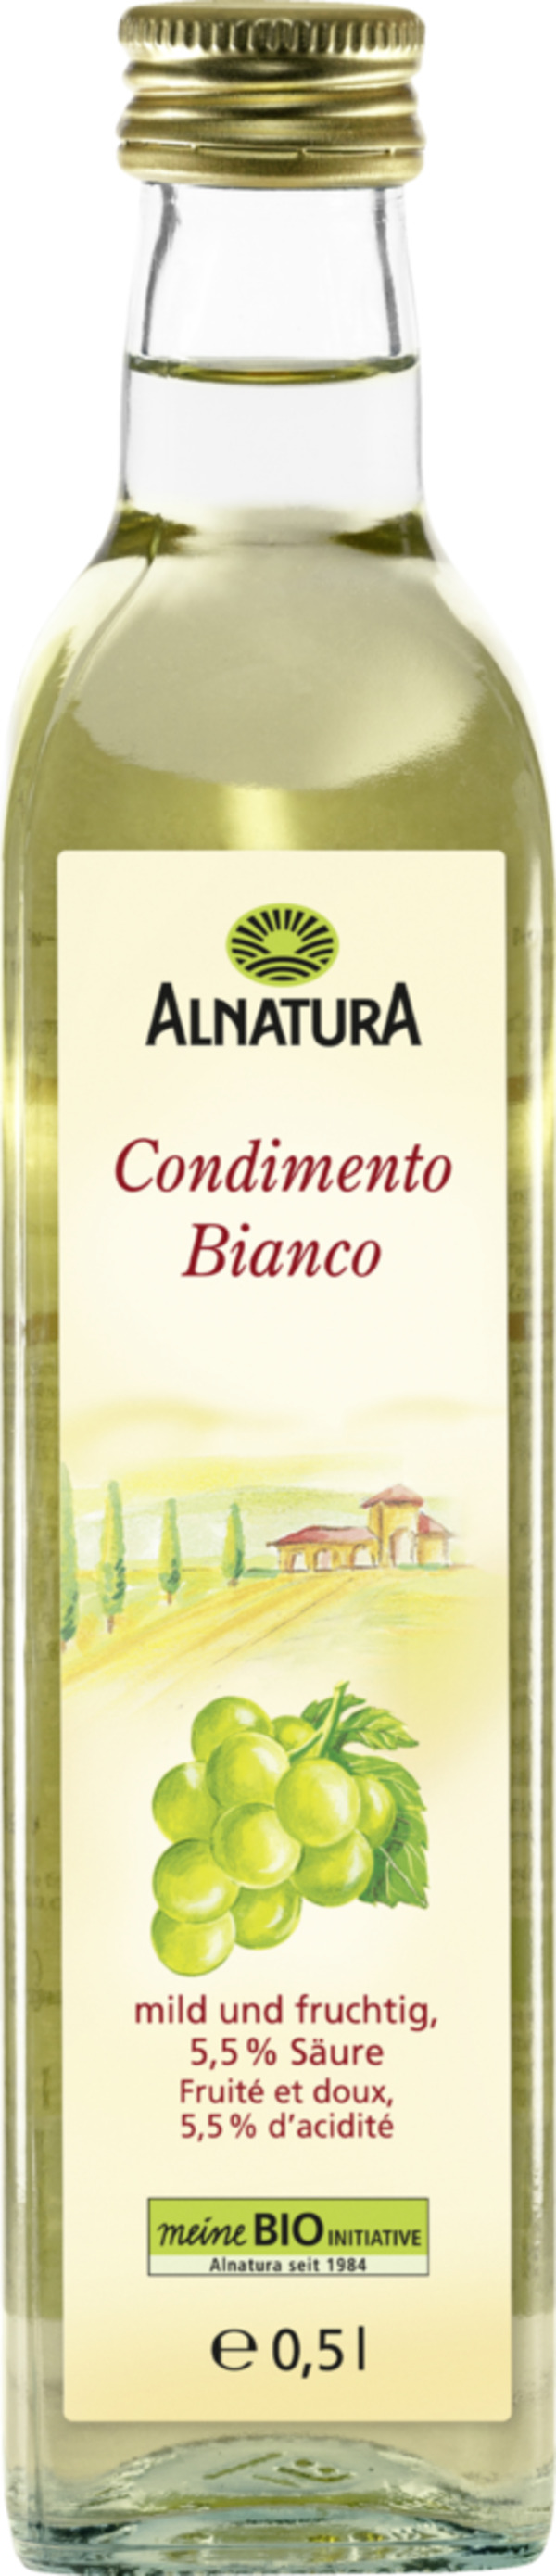 Bild 1 von Alnatura Bio Condimento Bianco